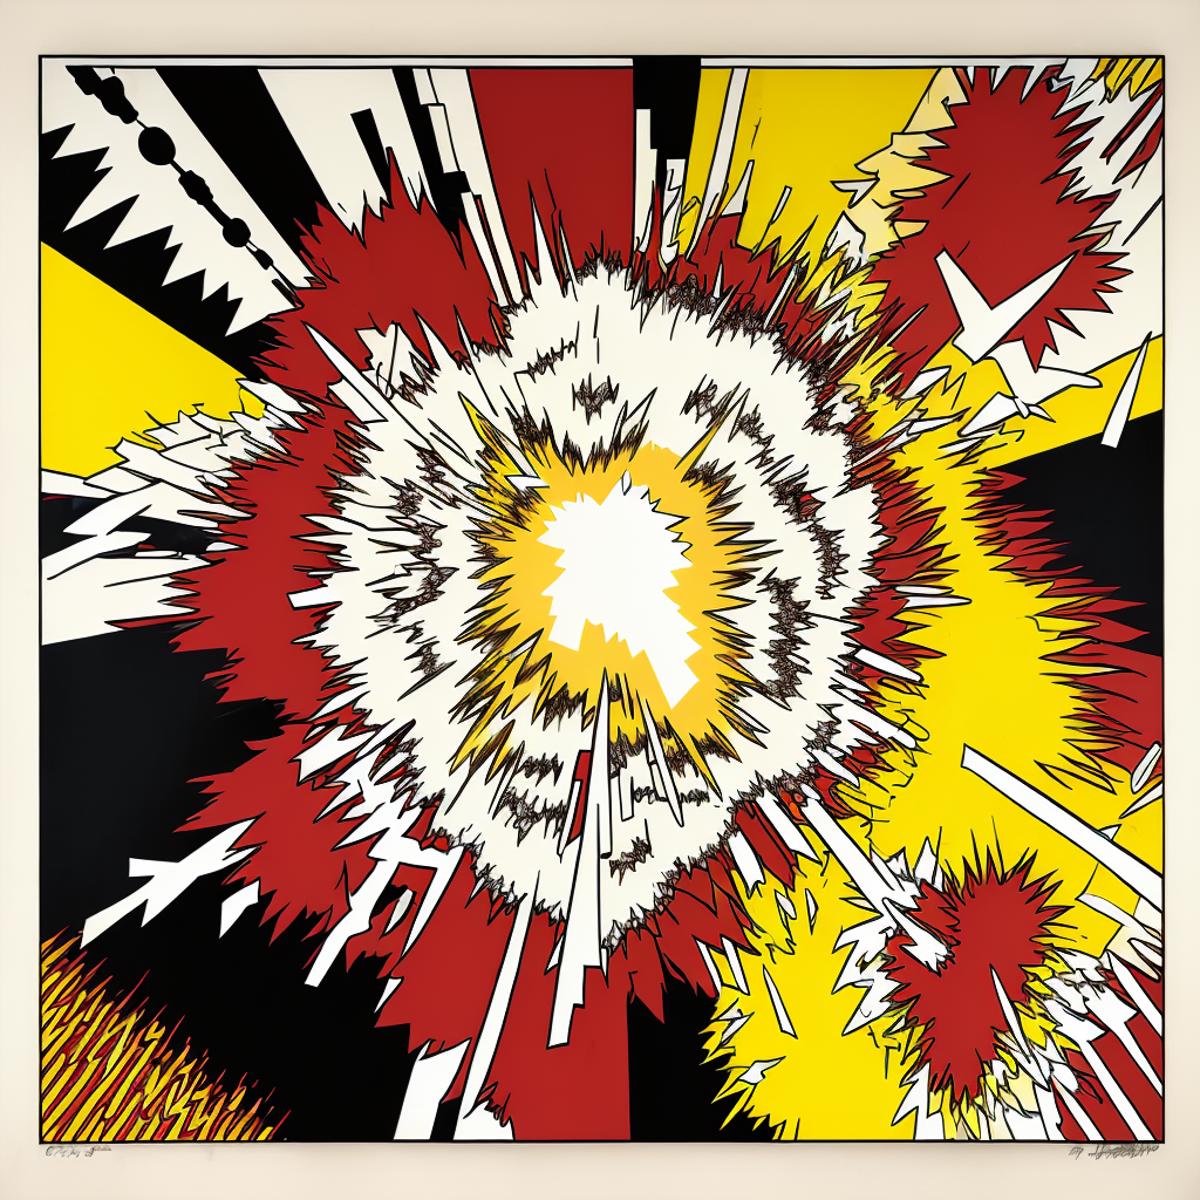 Roy Lichtenstein Pop Art Style image by Jabberwocky207